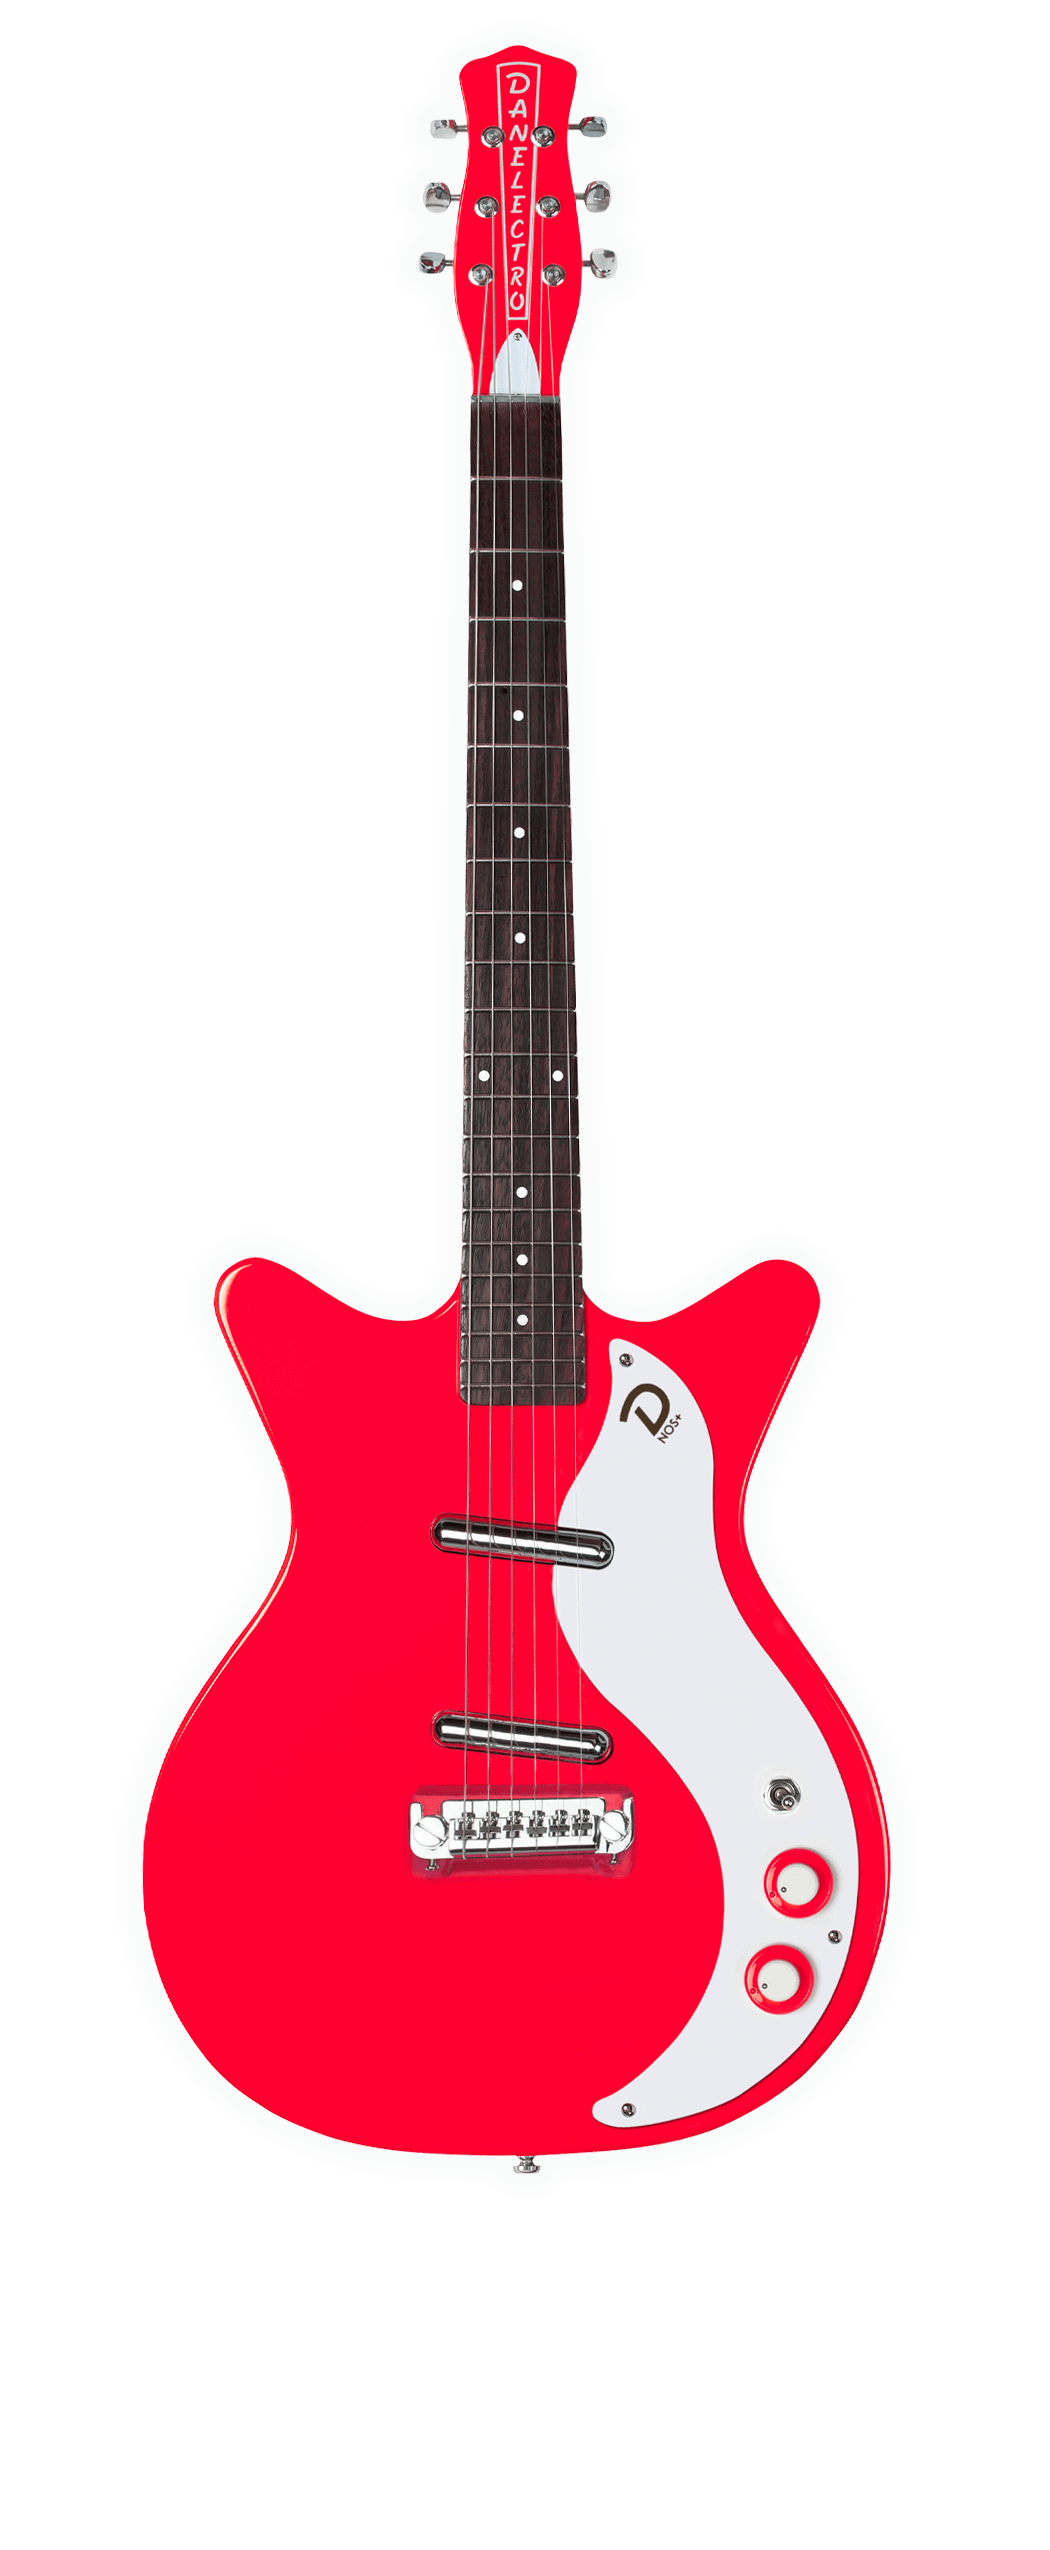 1959 Guitars | Guitars